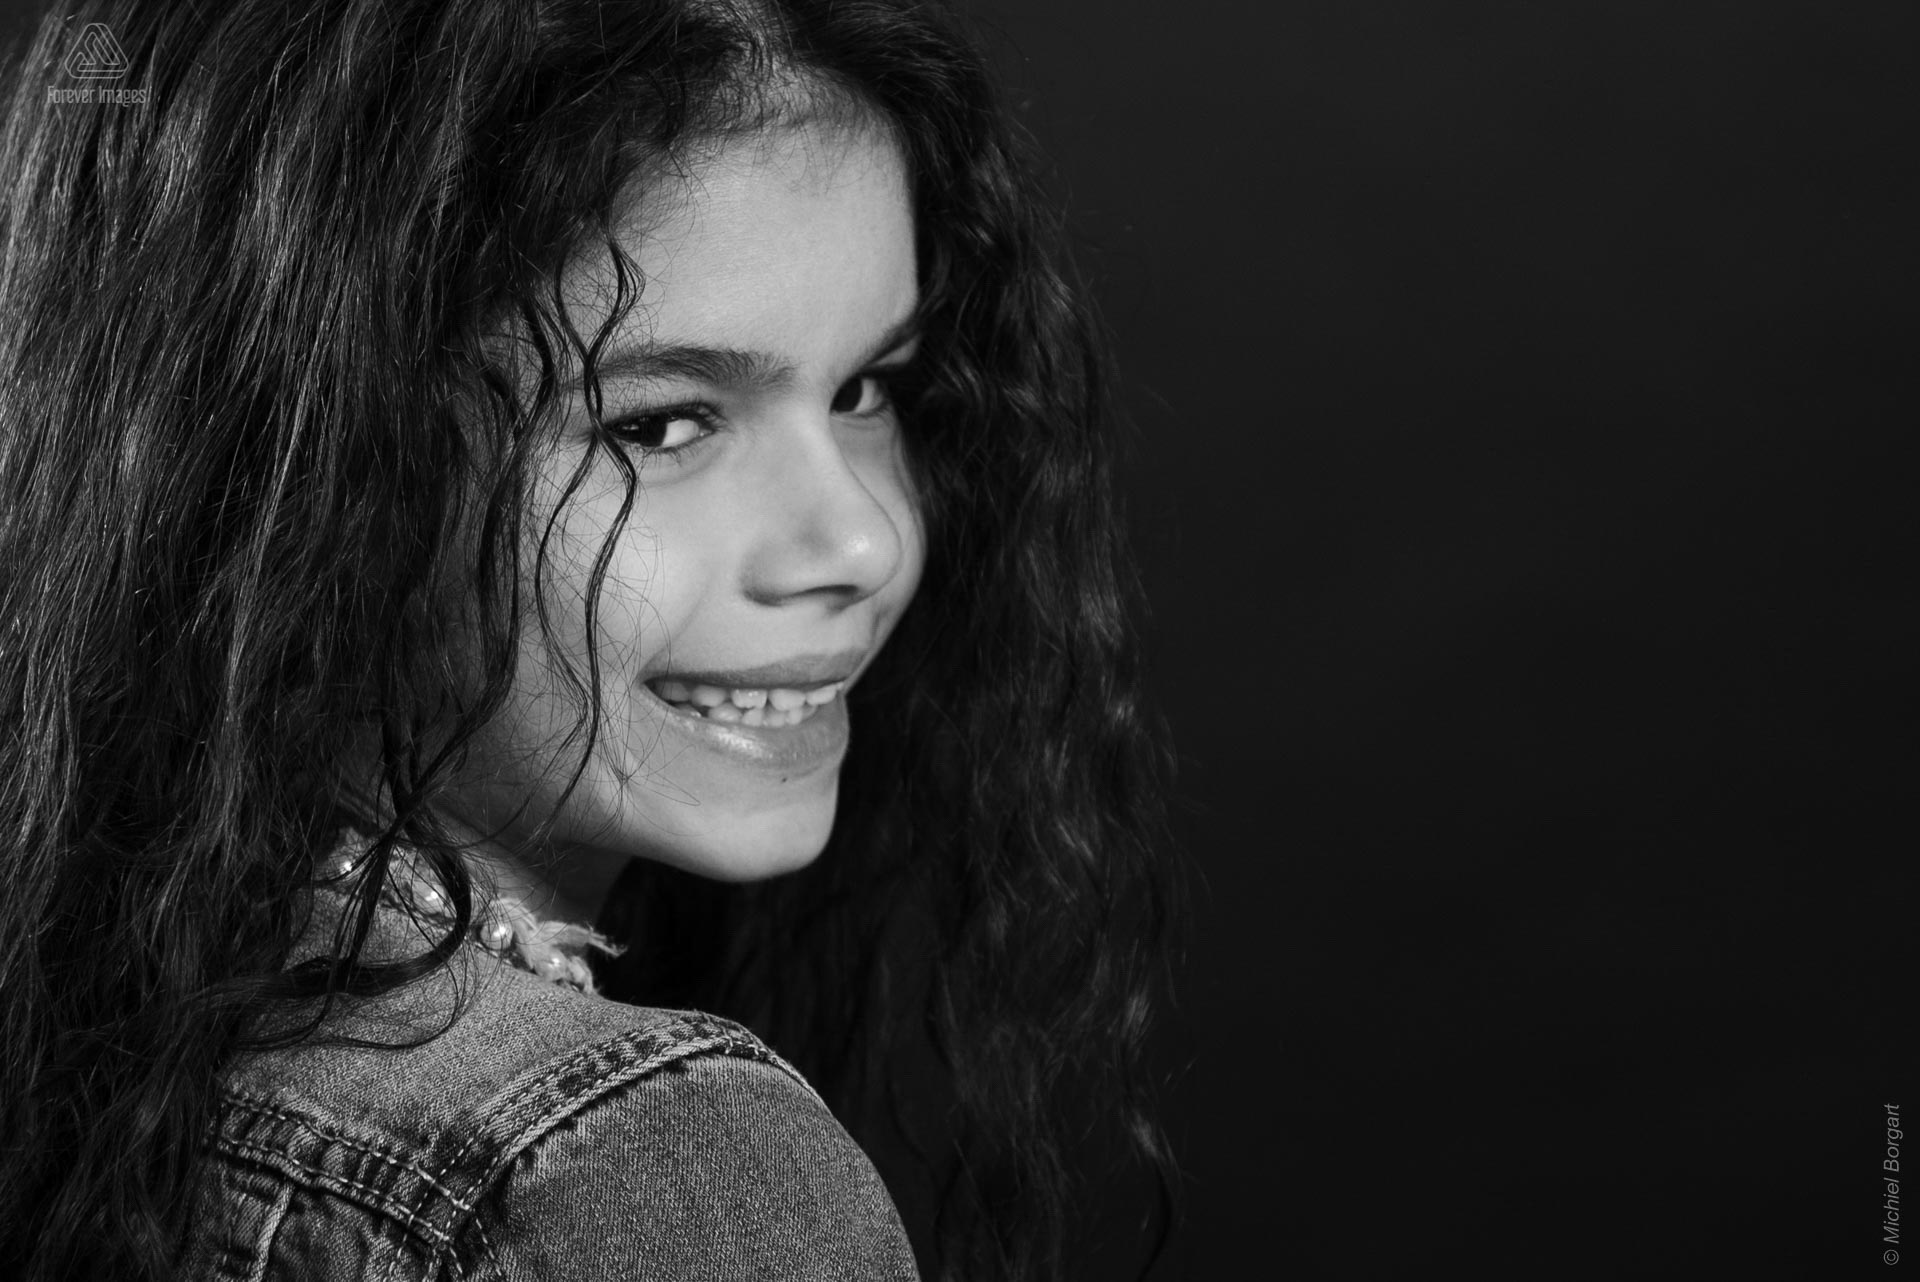 Portretfoto kinderfoto zwart-wit meisje mooie lach | Chhaya Grishaver | Portretfotograaf Michiel Borgart - Forever Images.